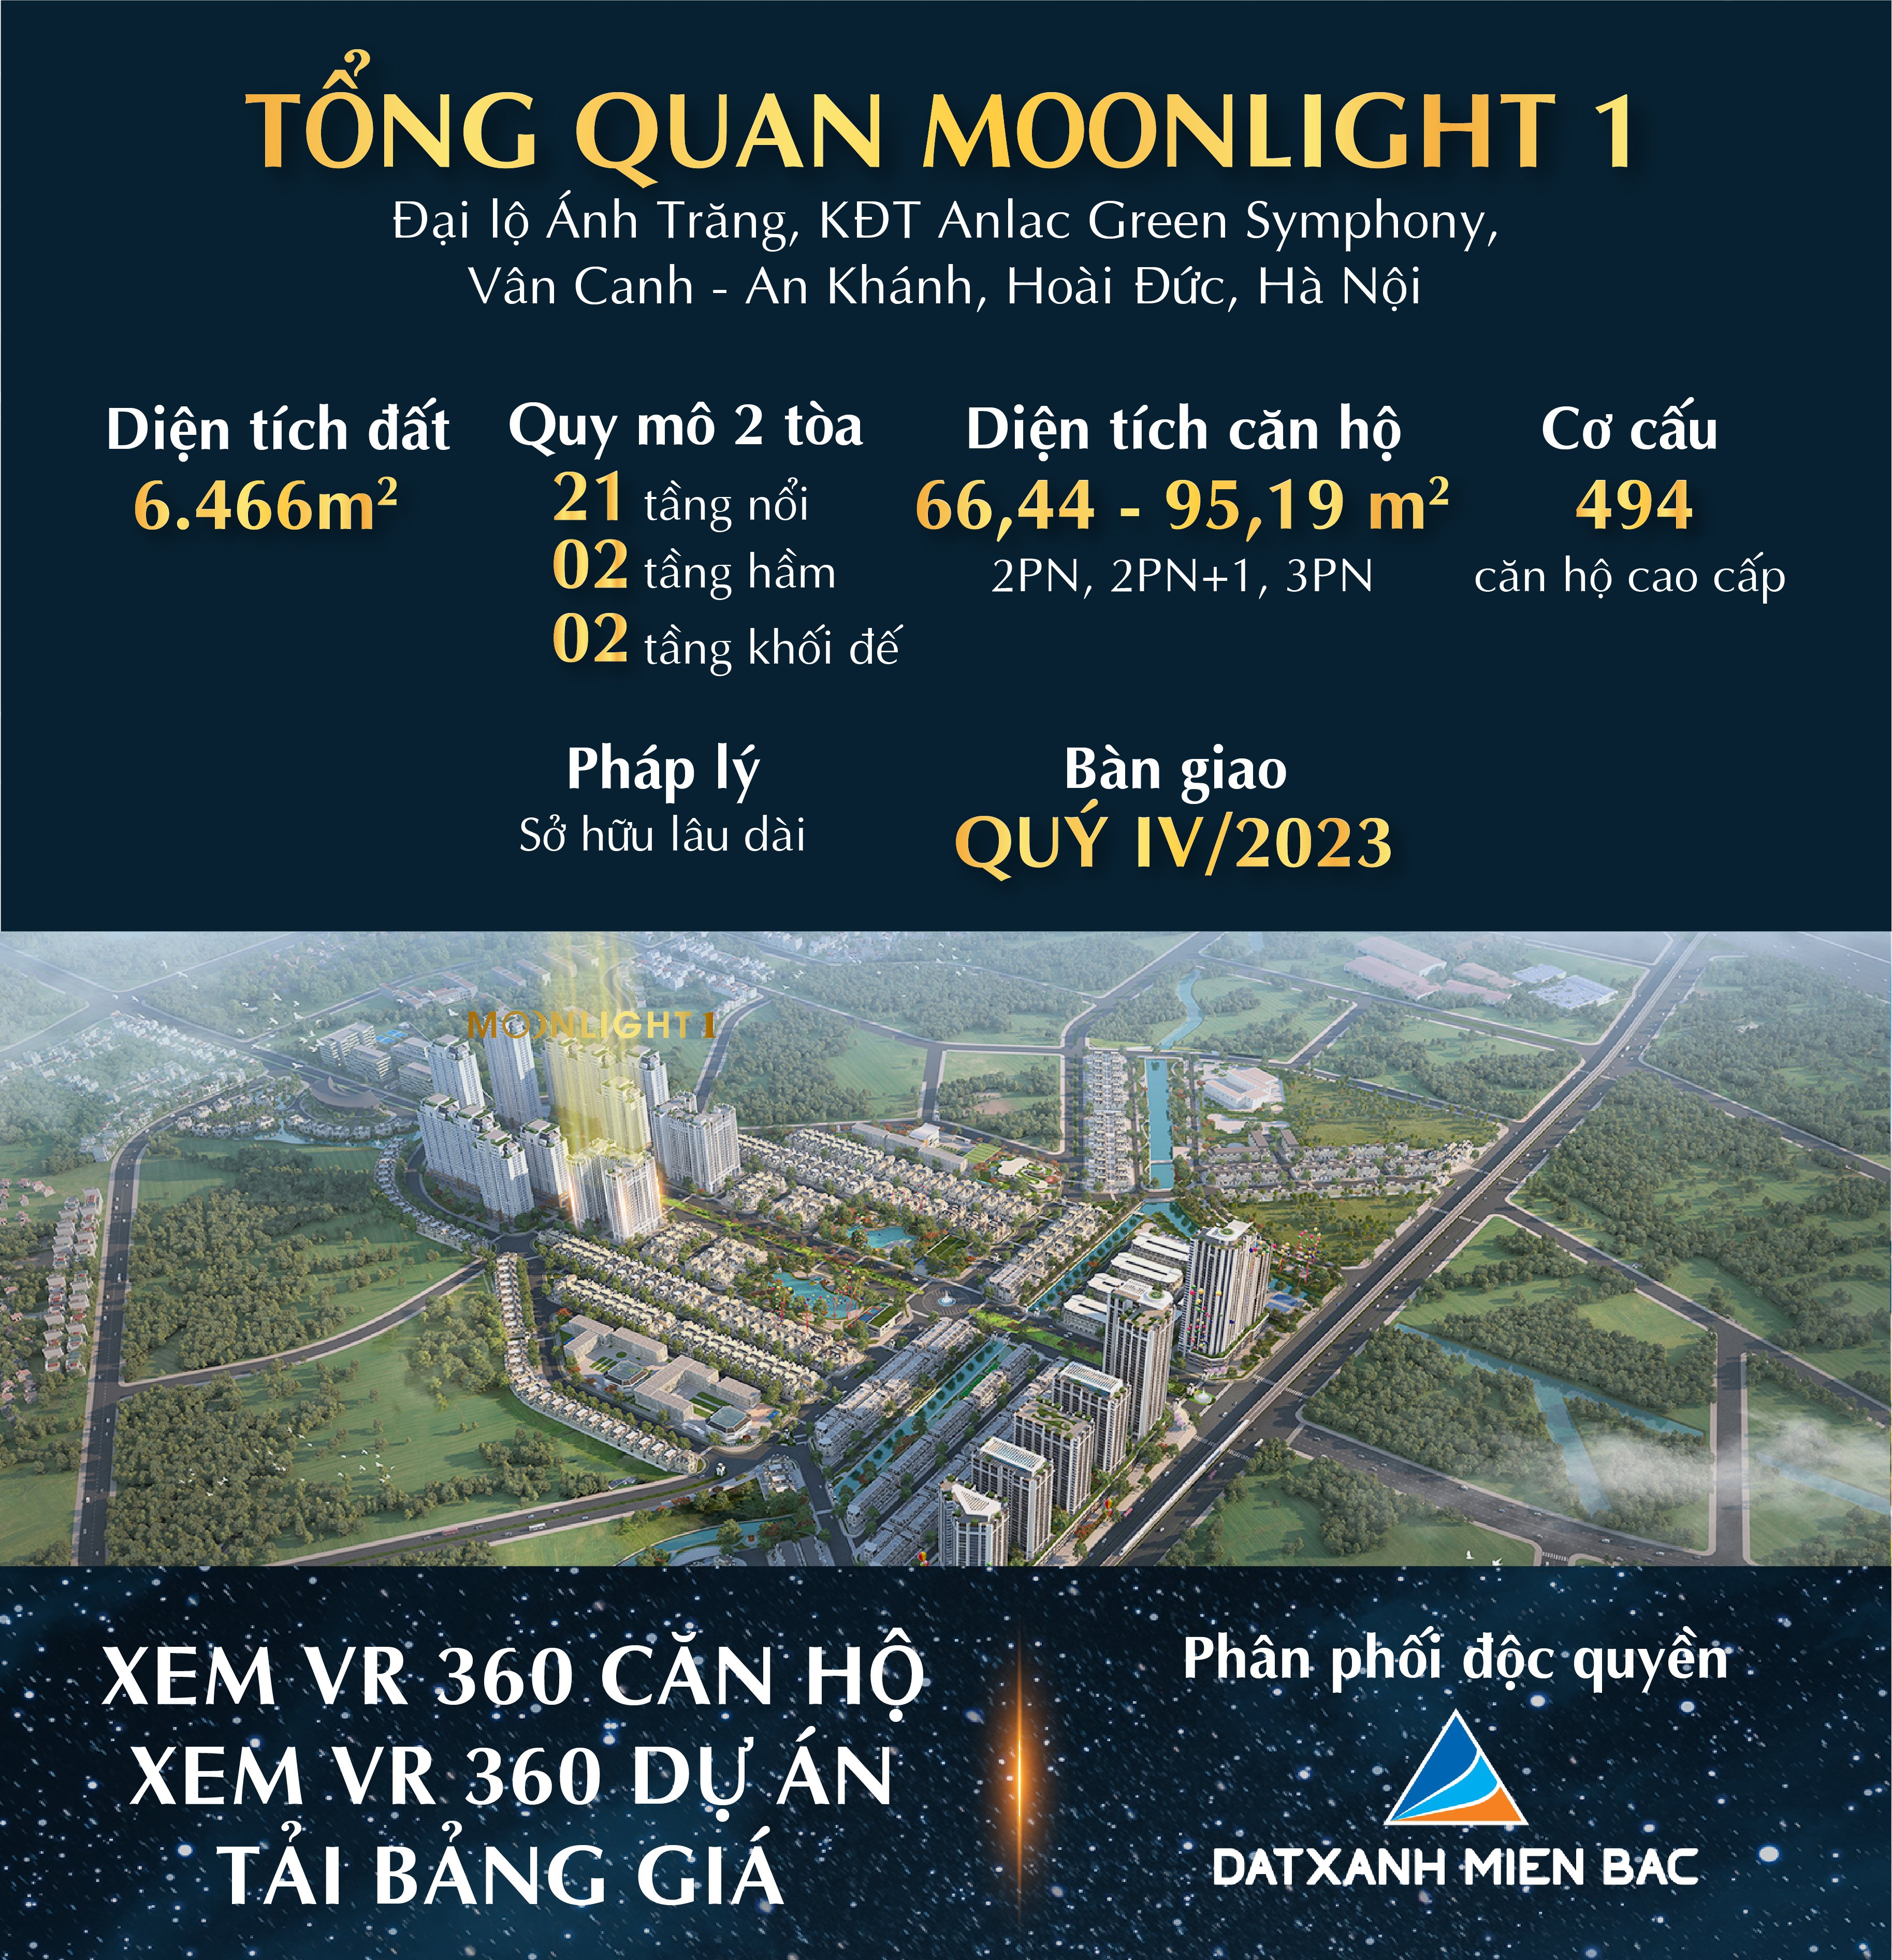 Cần bán Căn hộ chung cư Moonlight 1 An Lạc Green Symphony, Diện tích 68m², quà tặng tiền mặt CHIẾT KHẤU 15% - HTLS 0% 24 tháng. 3